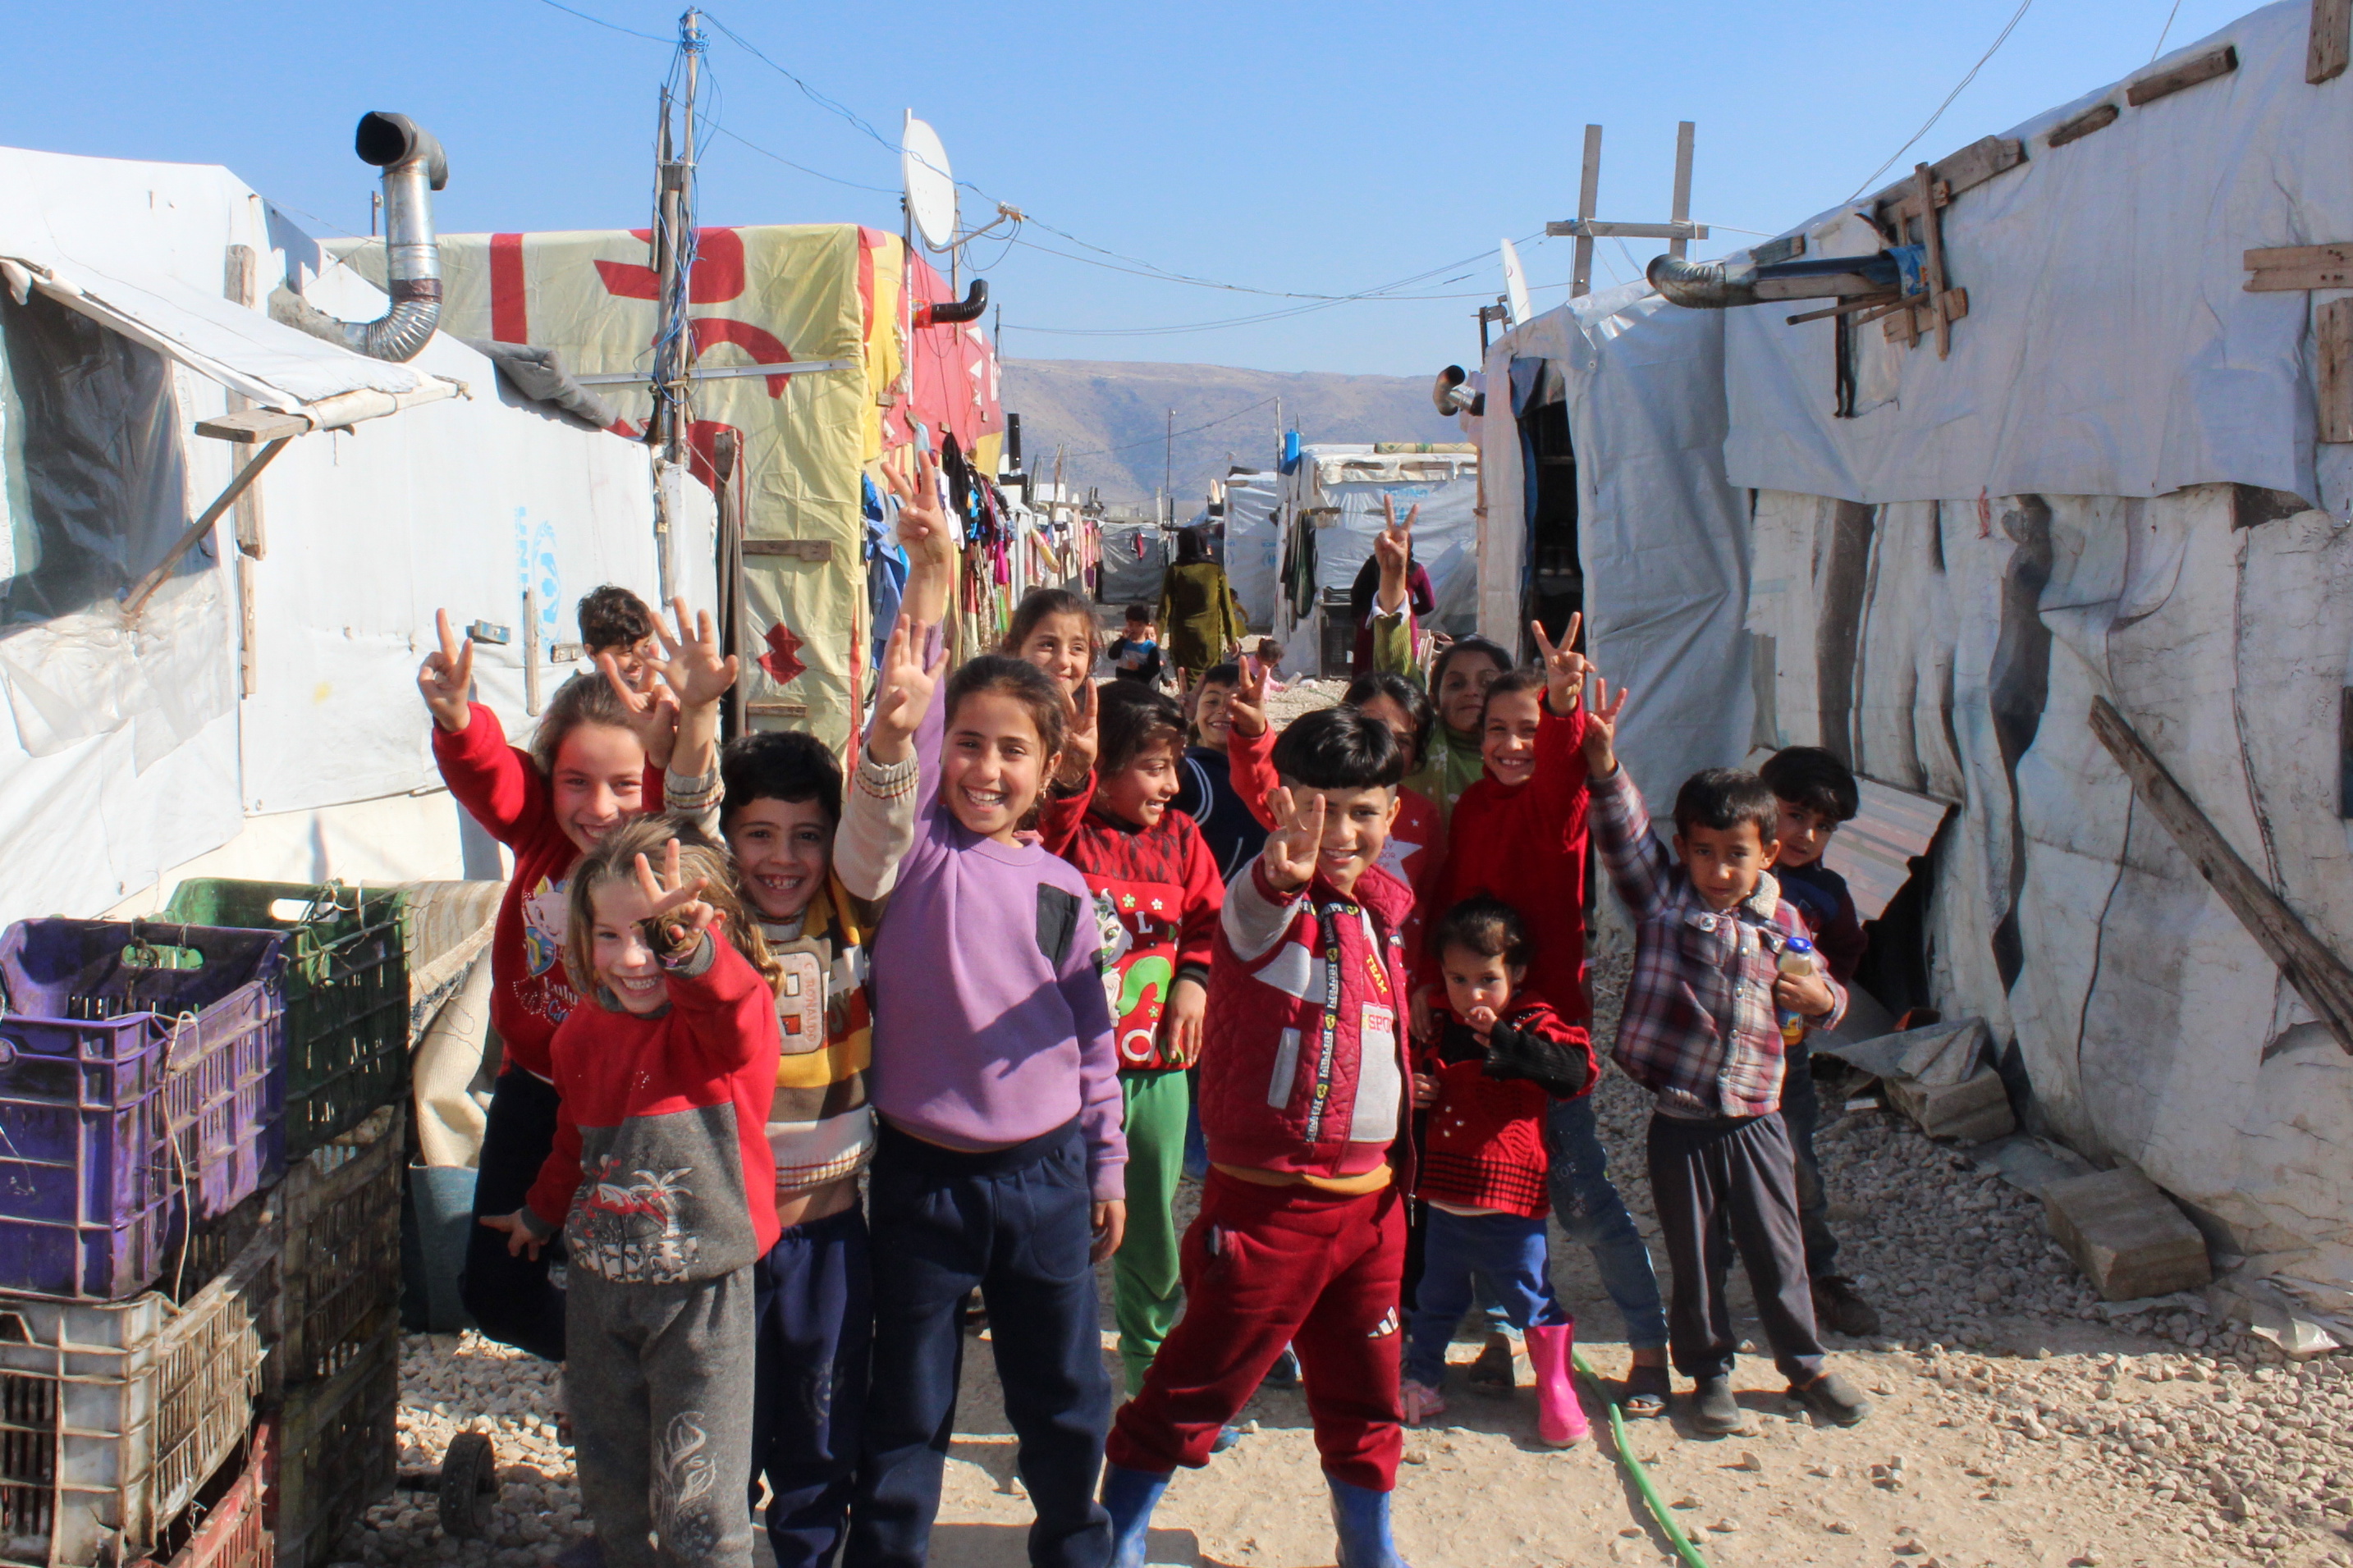 eine Gruppe Kinder im Grundschulalter grinst in die Kamera, im Hintergrund sind Zelte eines Flüchtlingscamps erkennbar